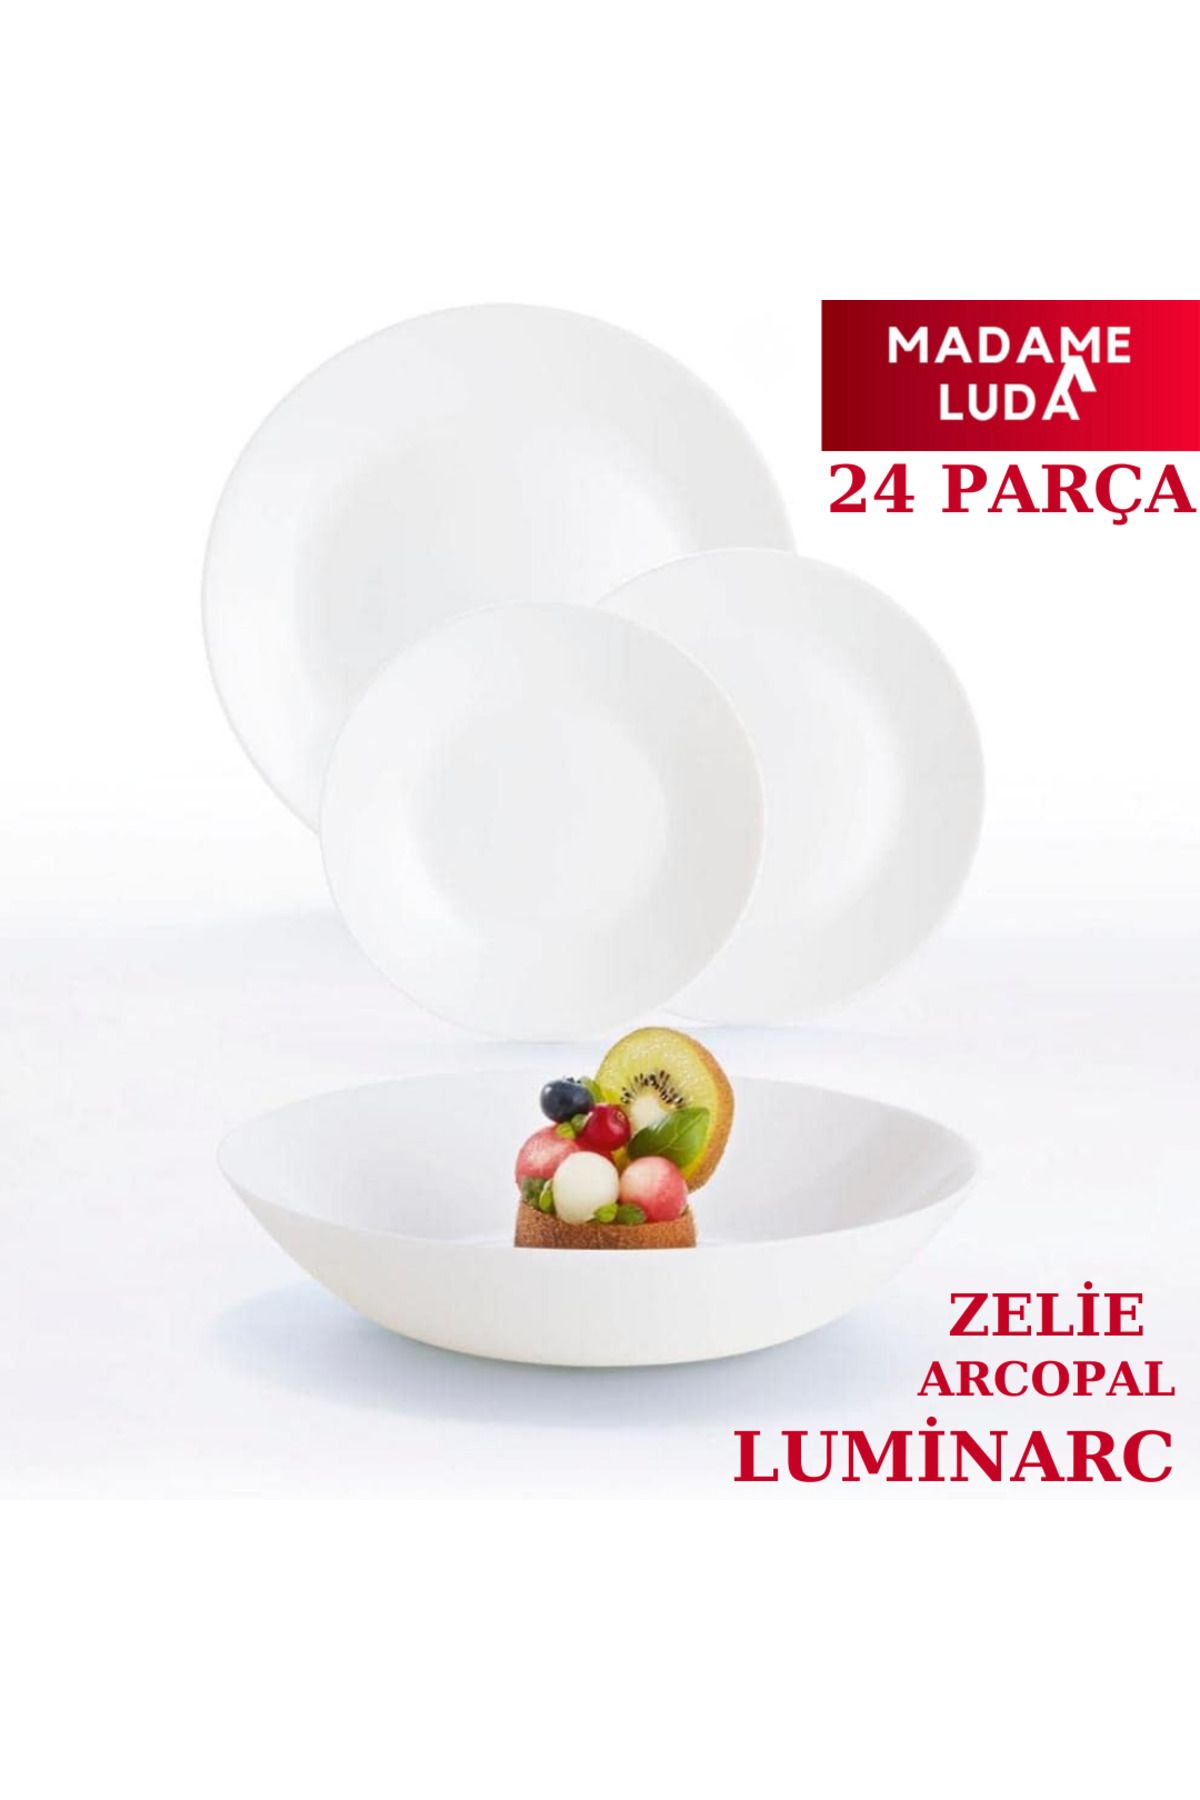 Luminarc Madame Luda Arcopal Zelie Beyaz 24 Parça 6 Kişilik Yemek Takımı.